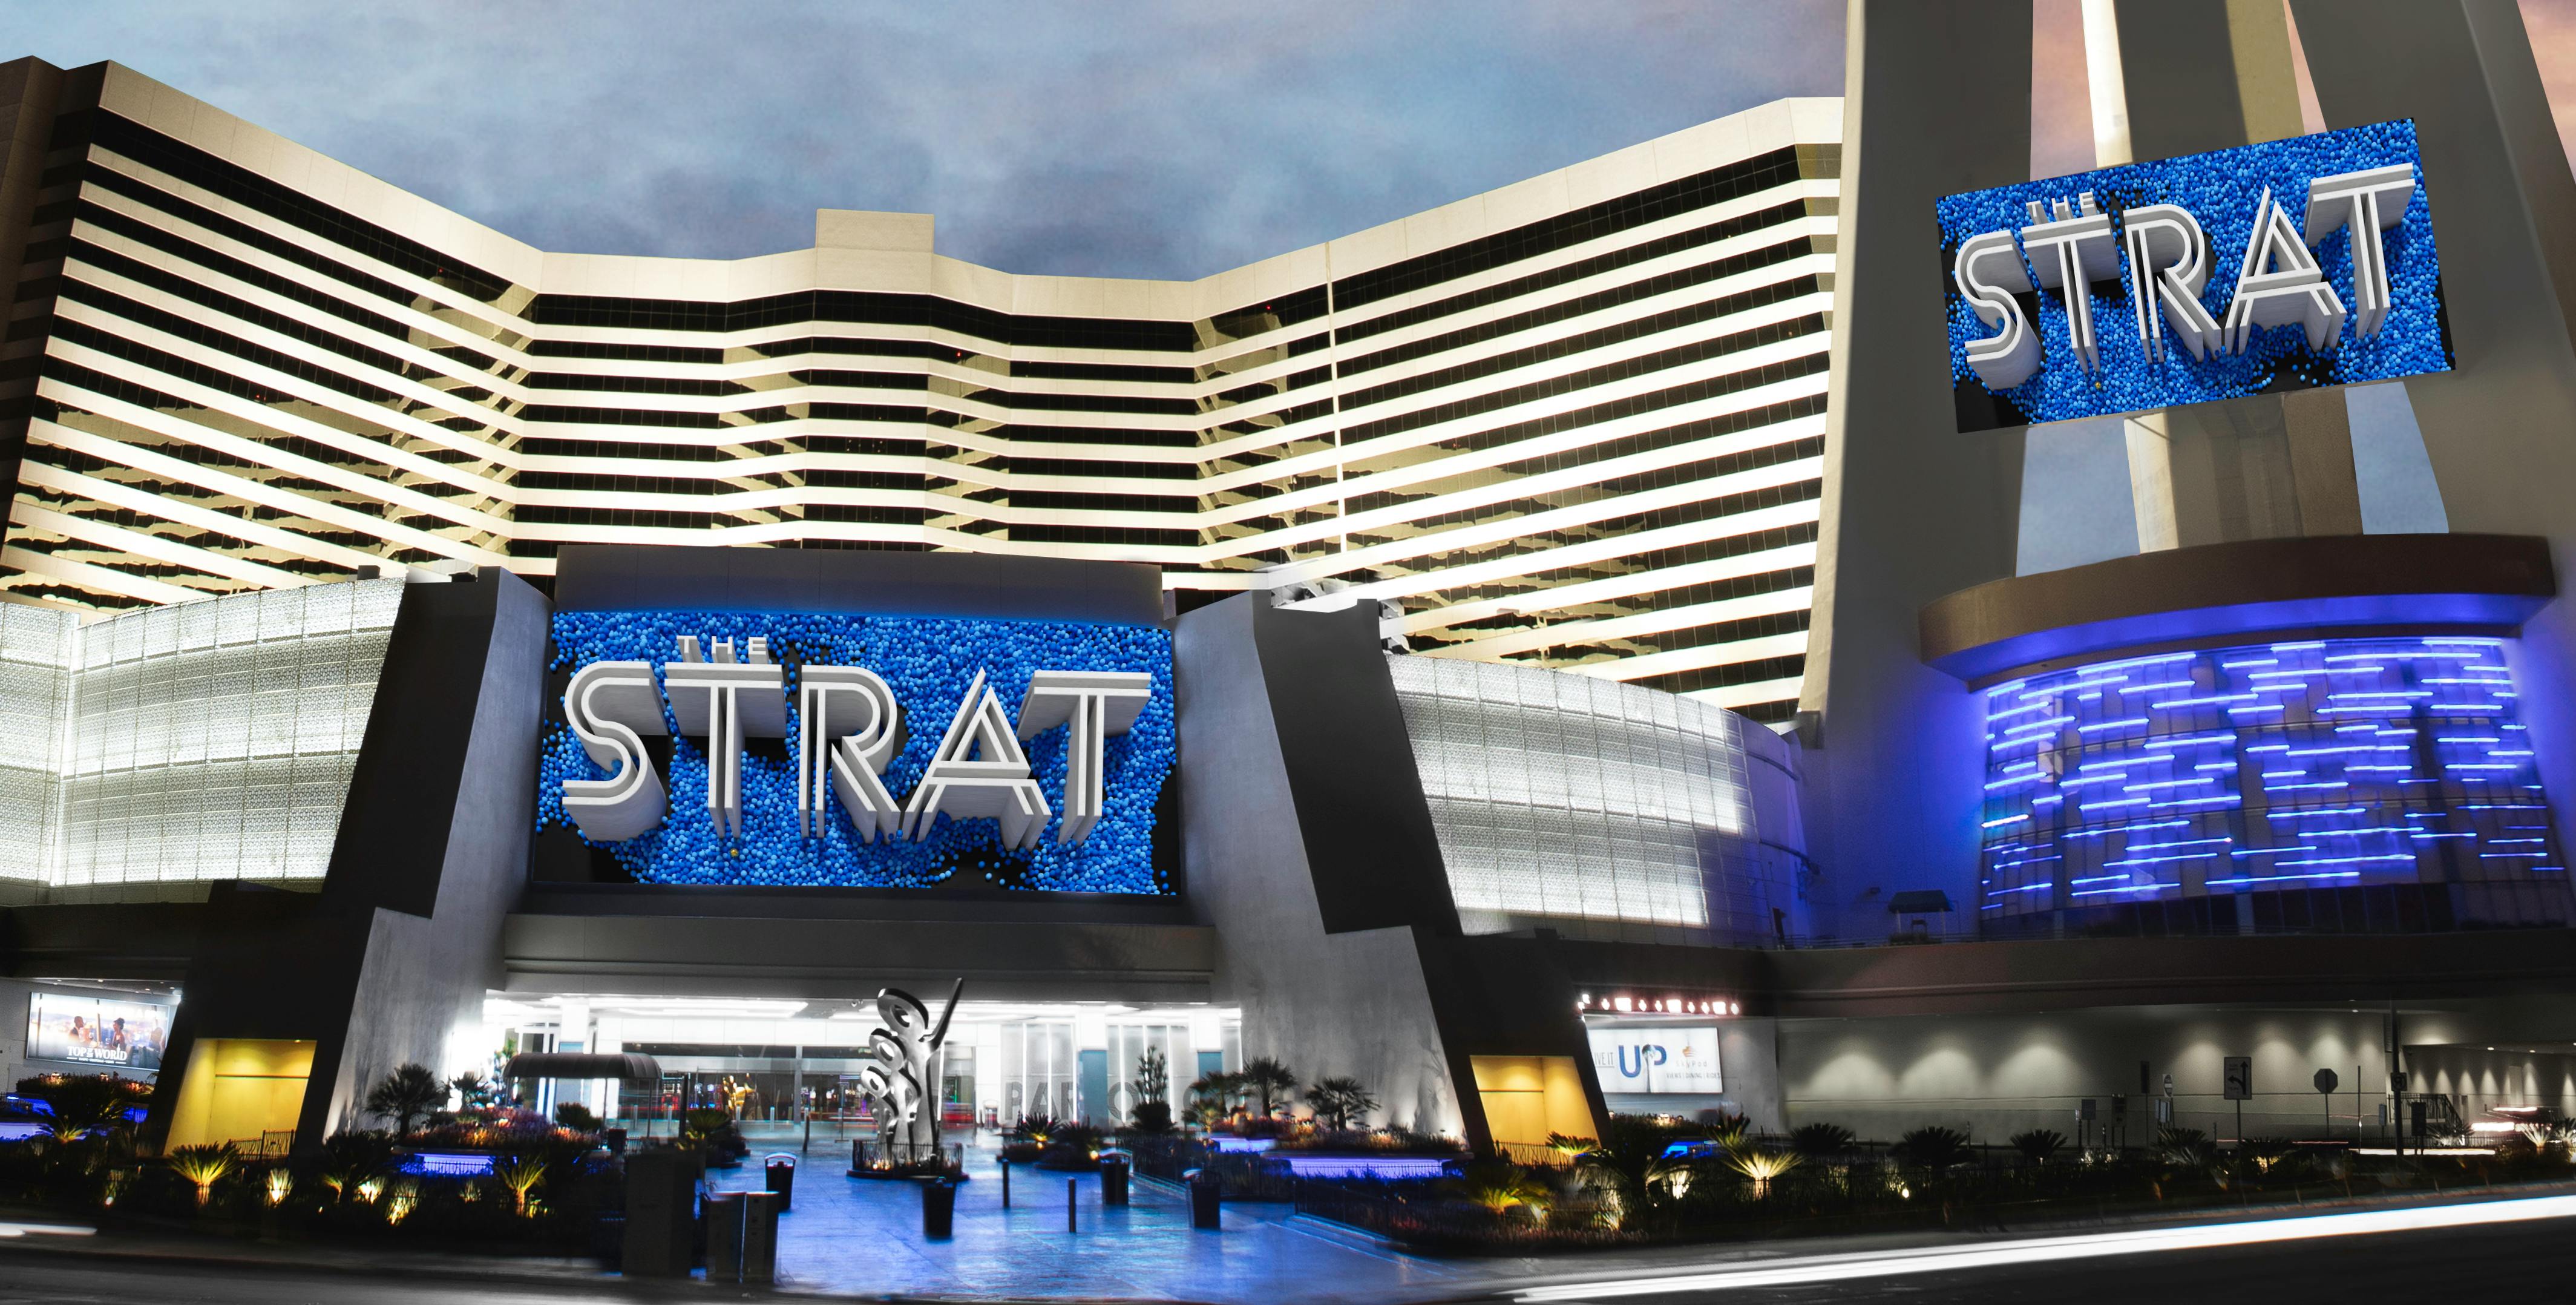 Stratosphere Casino, Hotel & Tower: Aussichtsplattform und Fahrgeschäfte